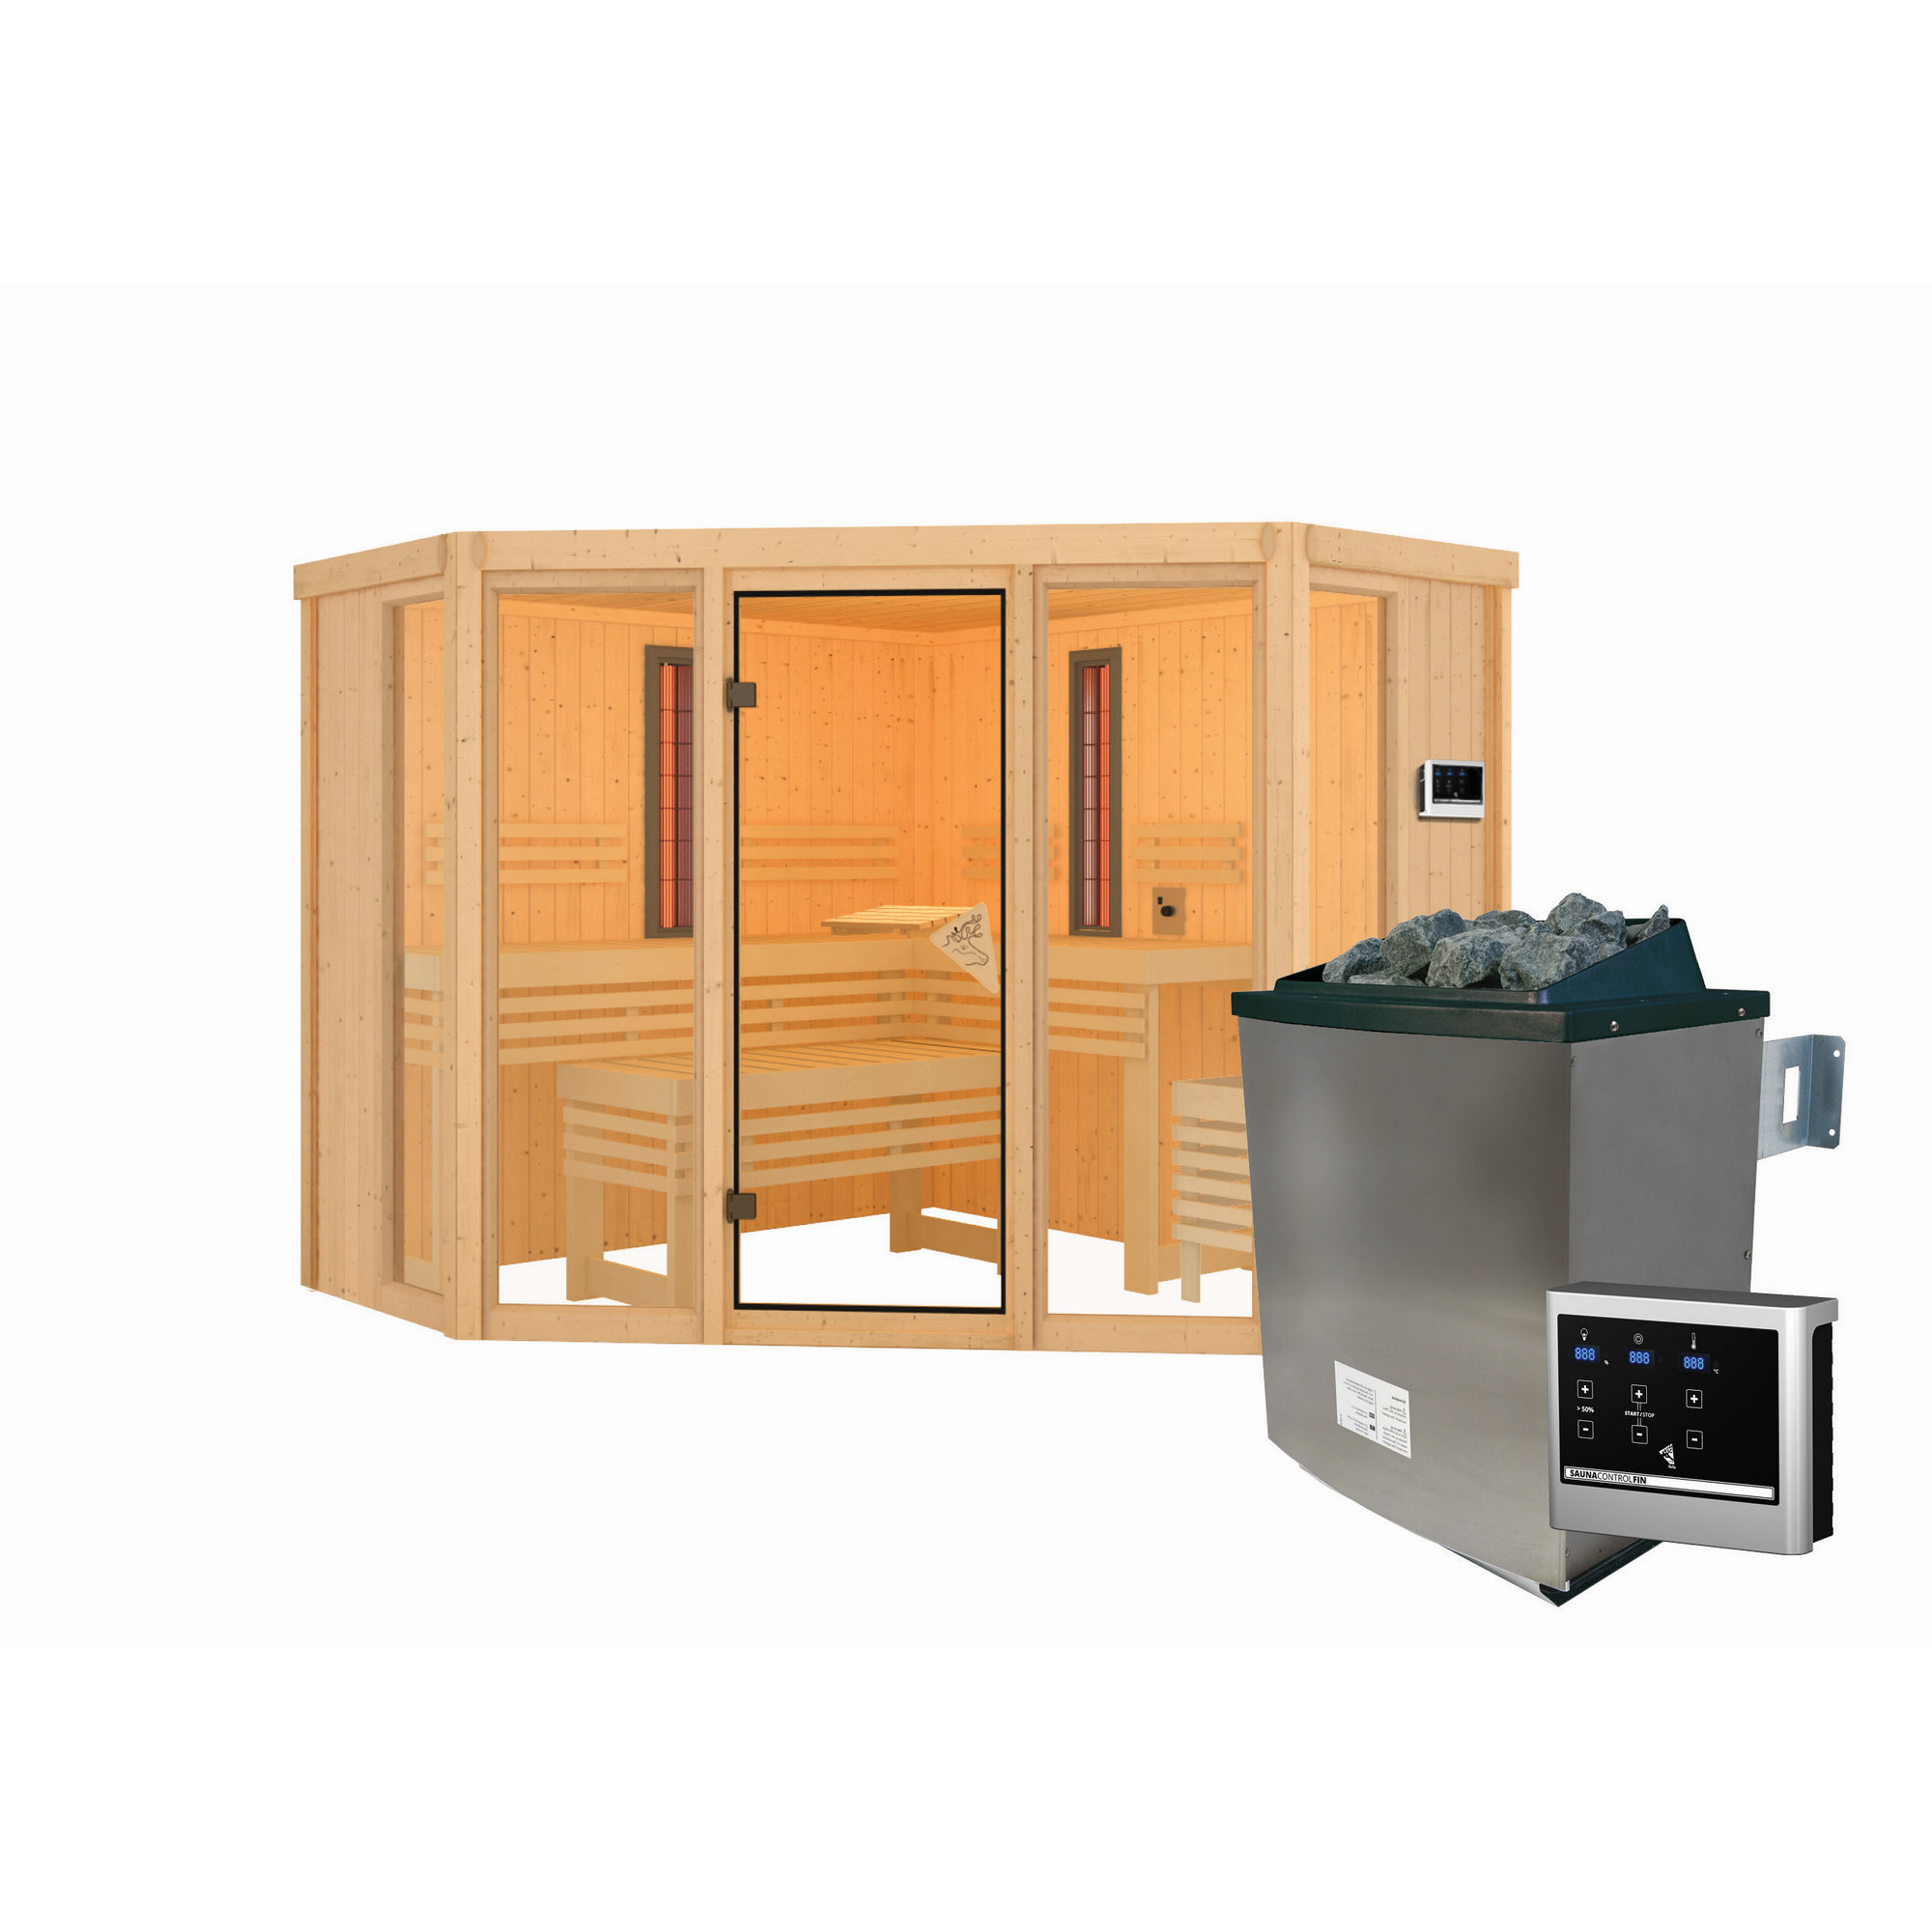 Infrarotkabine 'Aya' naturbelassen mit bronzierter Tür 9 kW Ofen externe Steuerung 231 x 231 x 198 cm + product picture